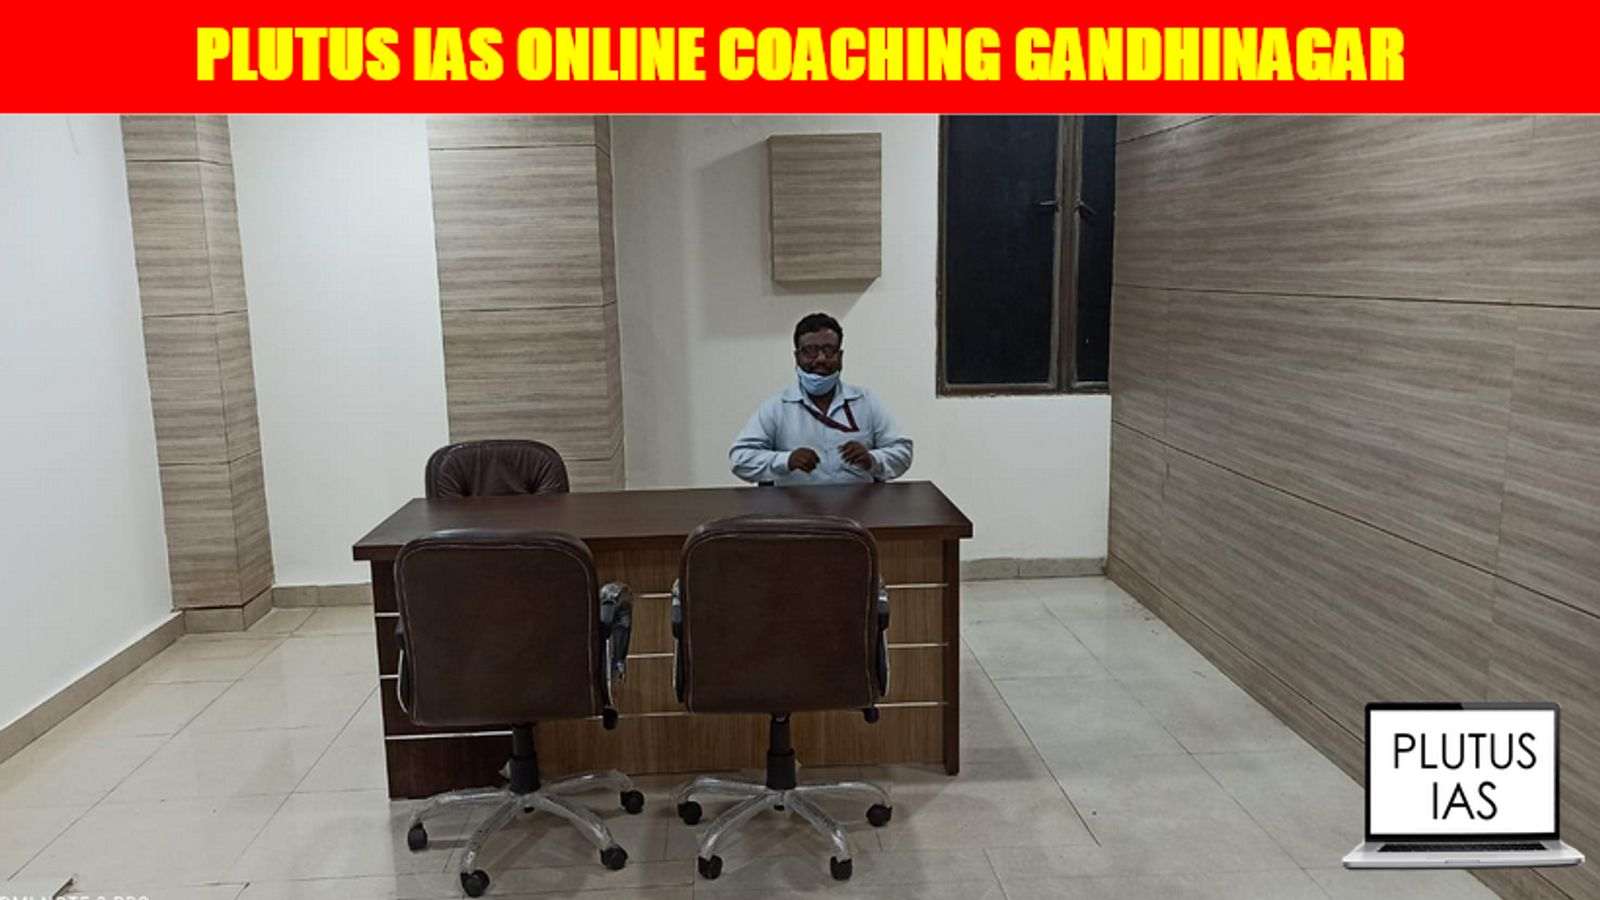 Plutus IAS Online Coaching Gandhinagar